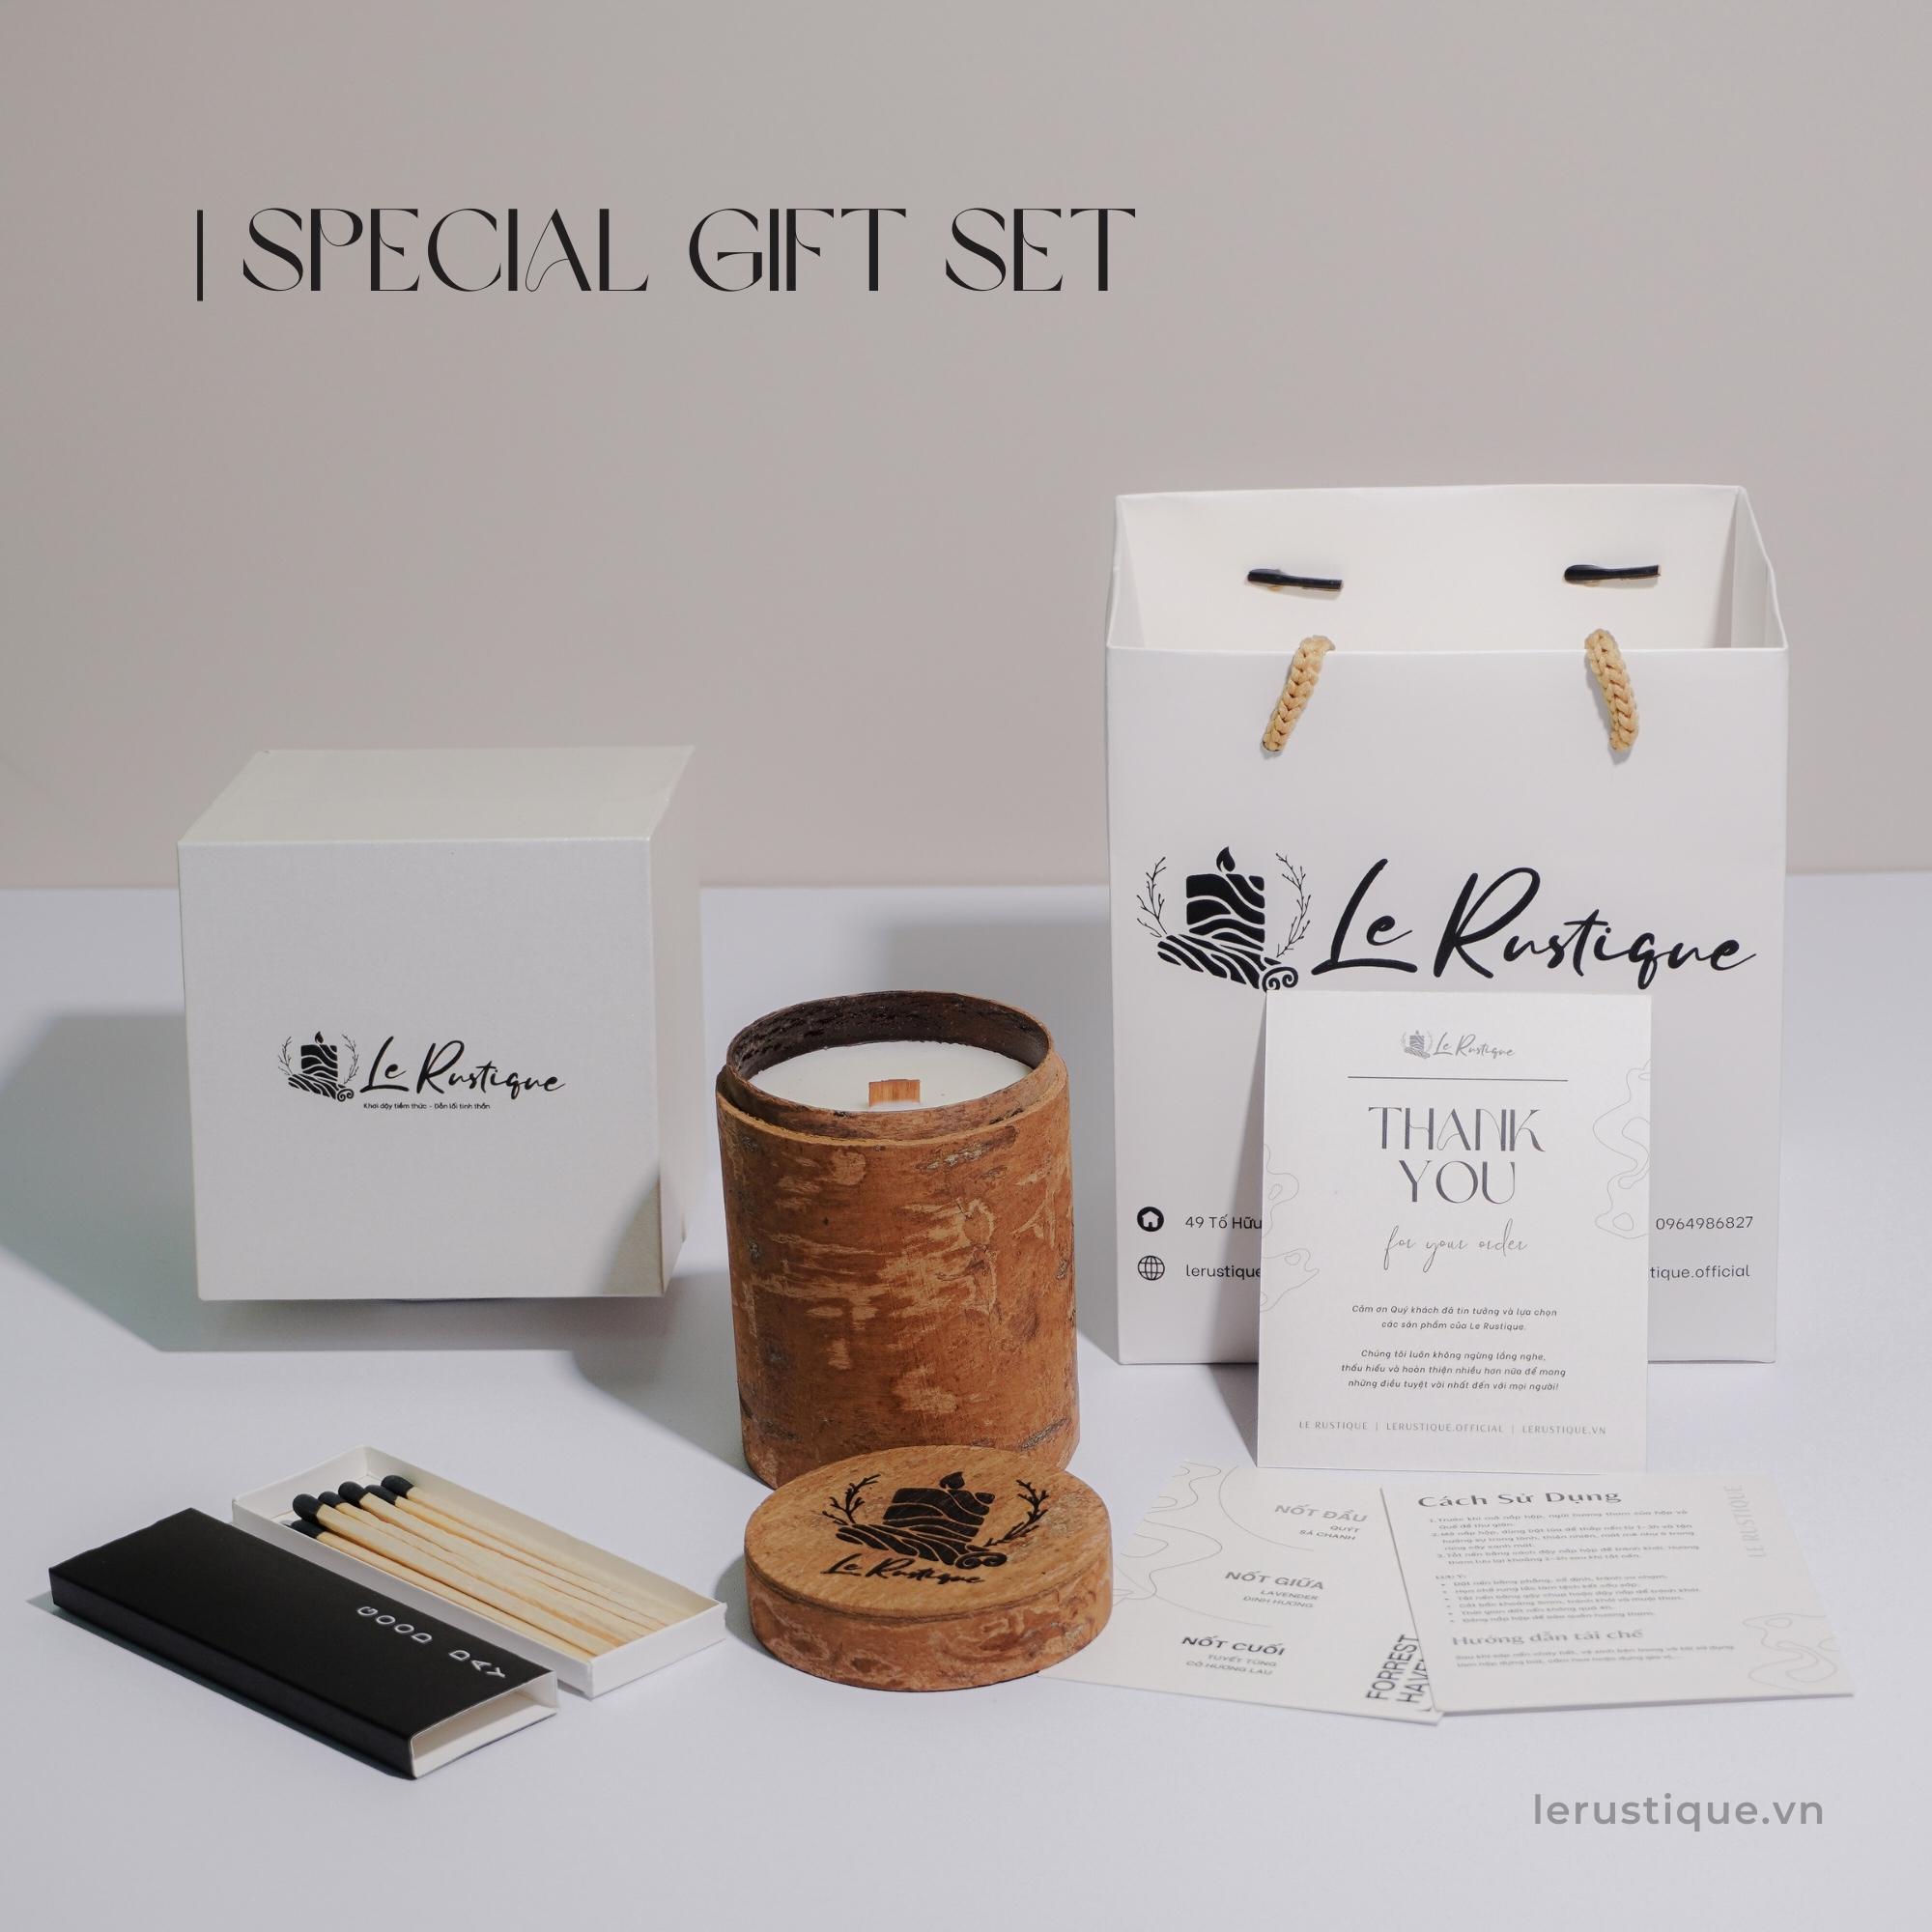 Set Quà Tặng Nến Thơm Le Rustique Phiên Bản Hộp Giấy Đặc Biệt Cho Bạn Bè/ Người Thân/ Người Yêu - Le Rustique's Special Gift Set